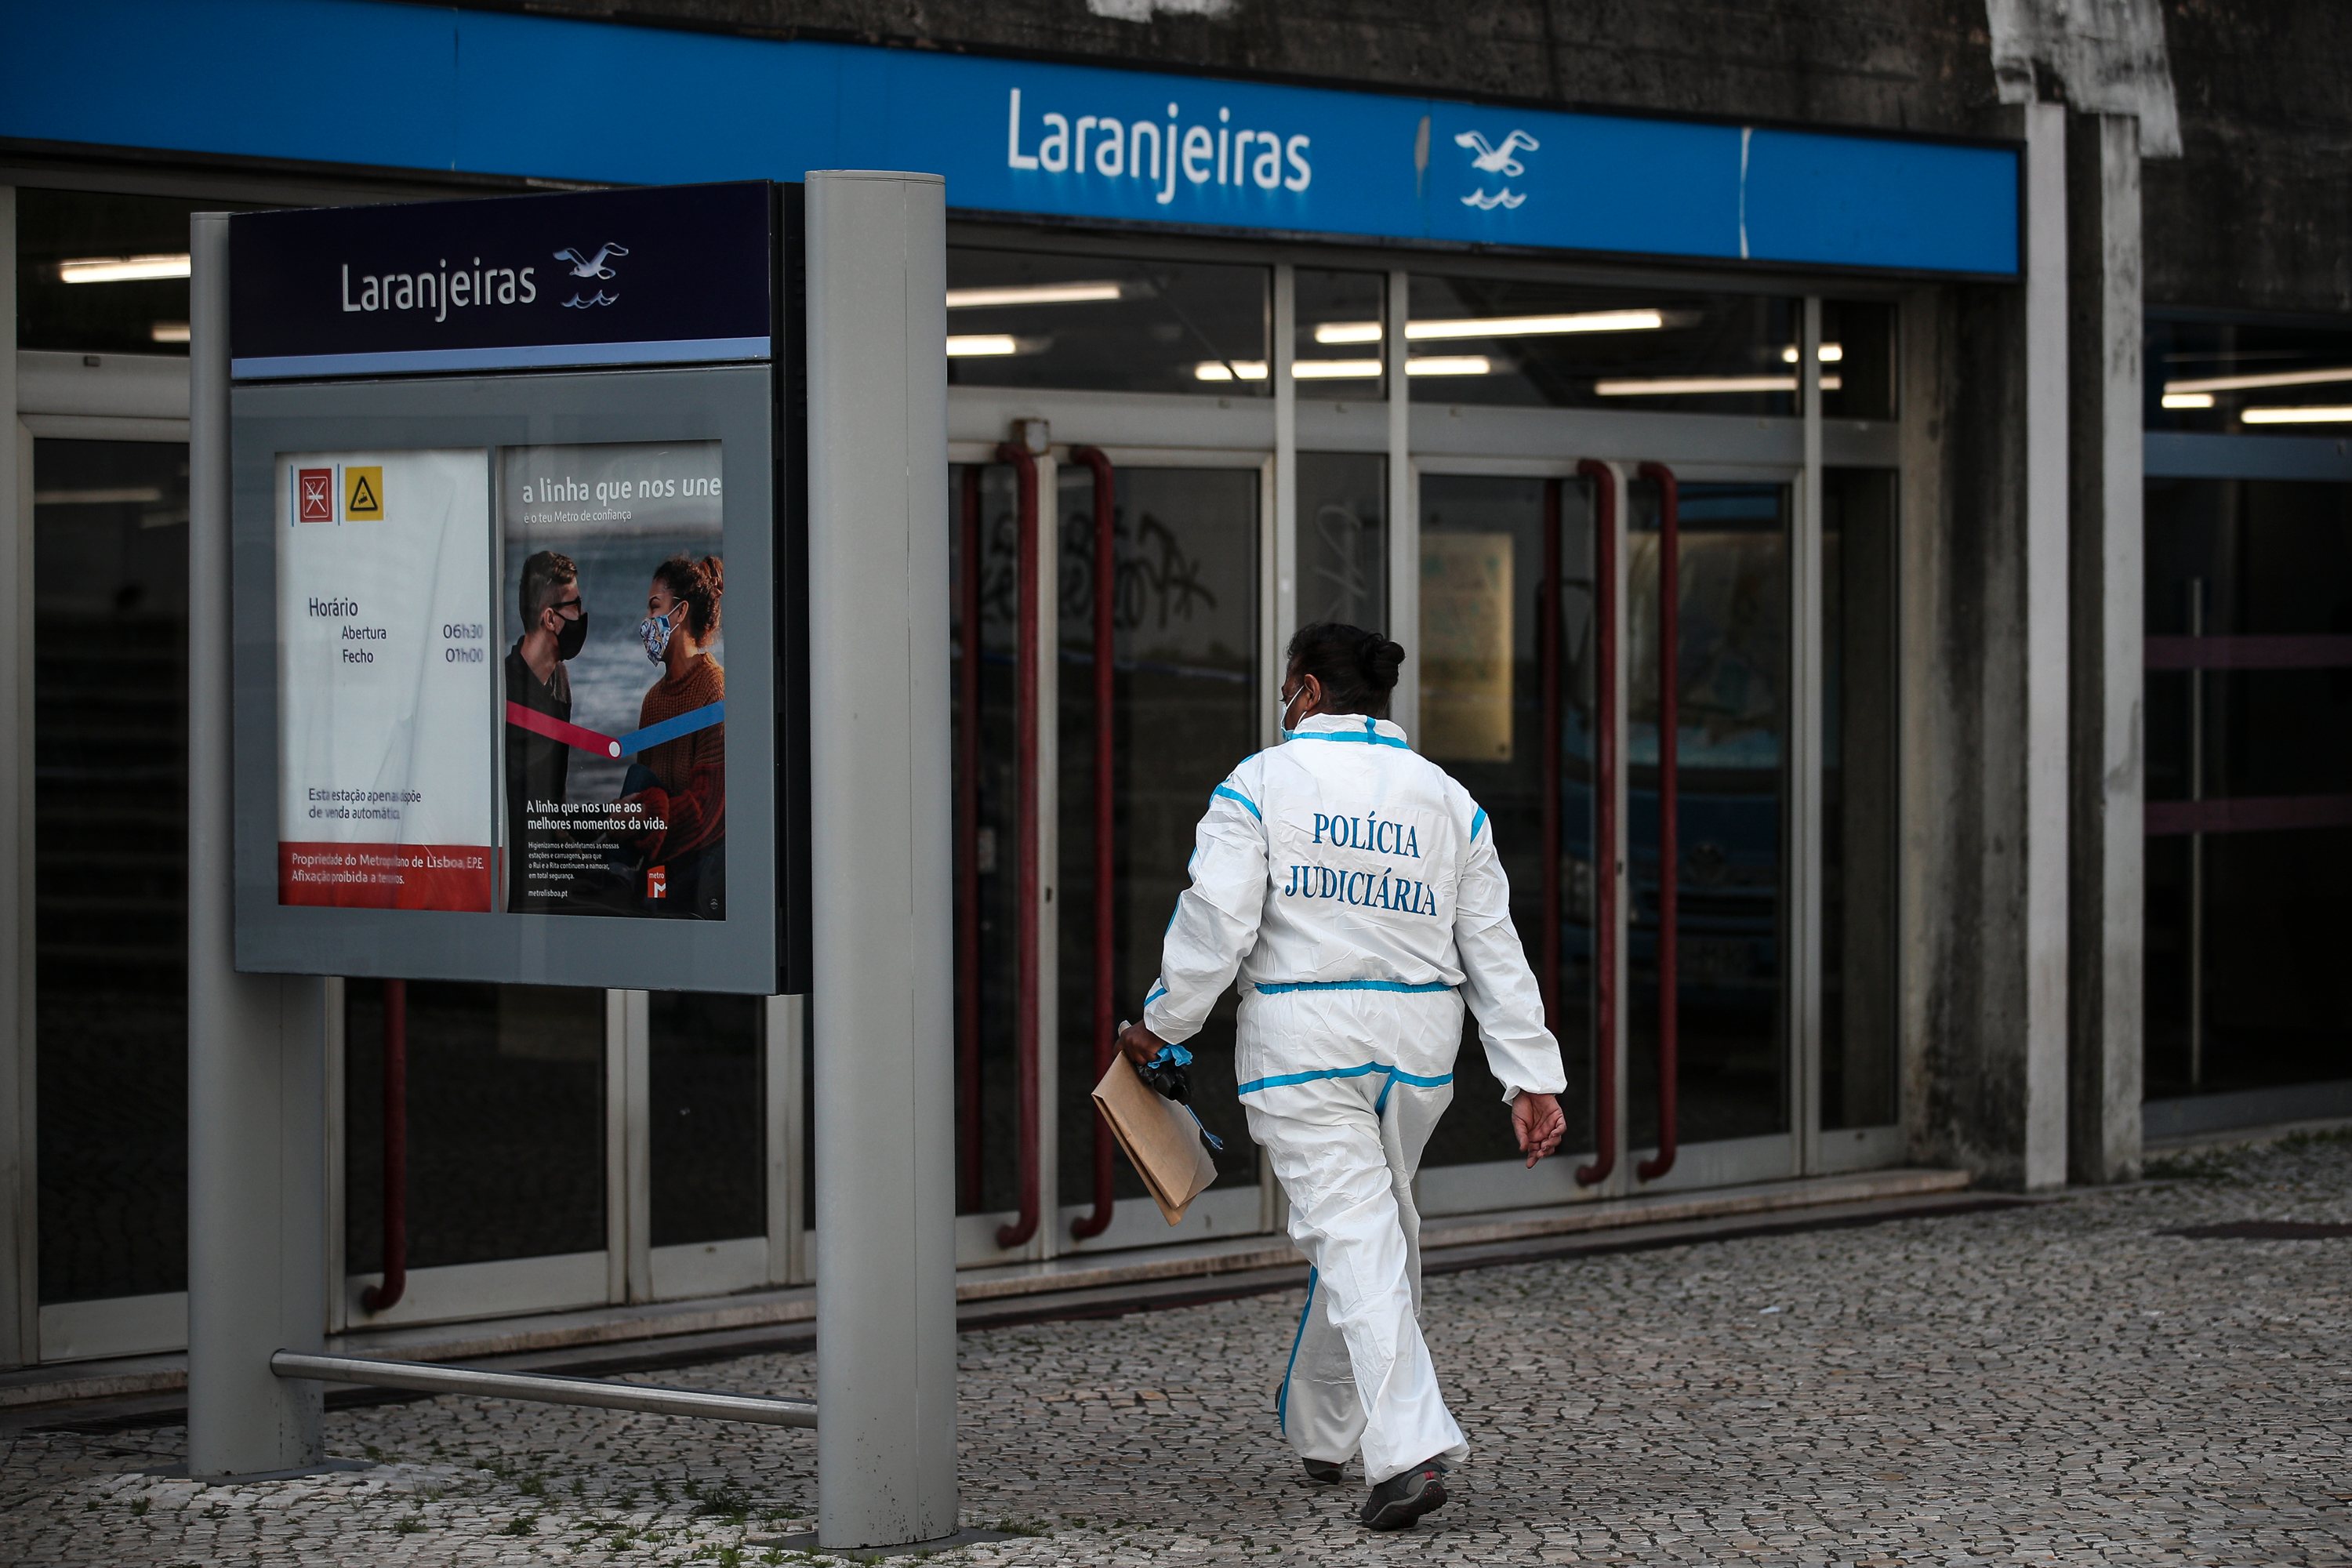 Detidos três suspeitos após morte de jovem que foi esfaqueado na estação de metro das Laranjeiras em Lisboa imagem foto foto